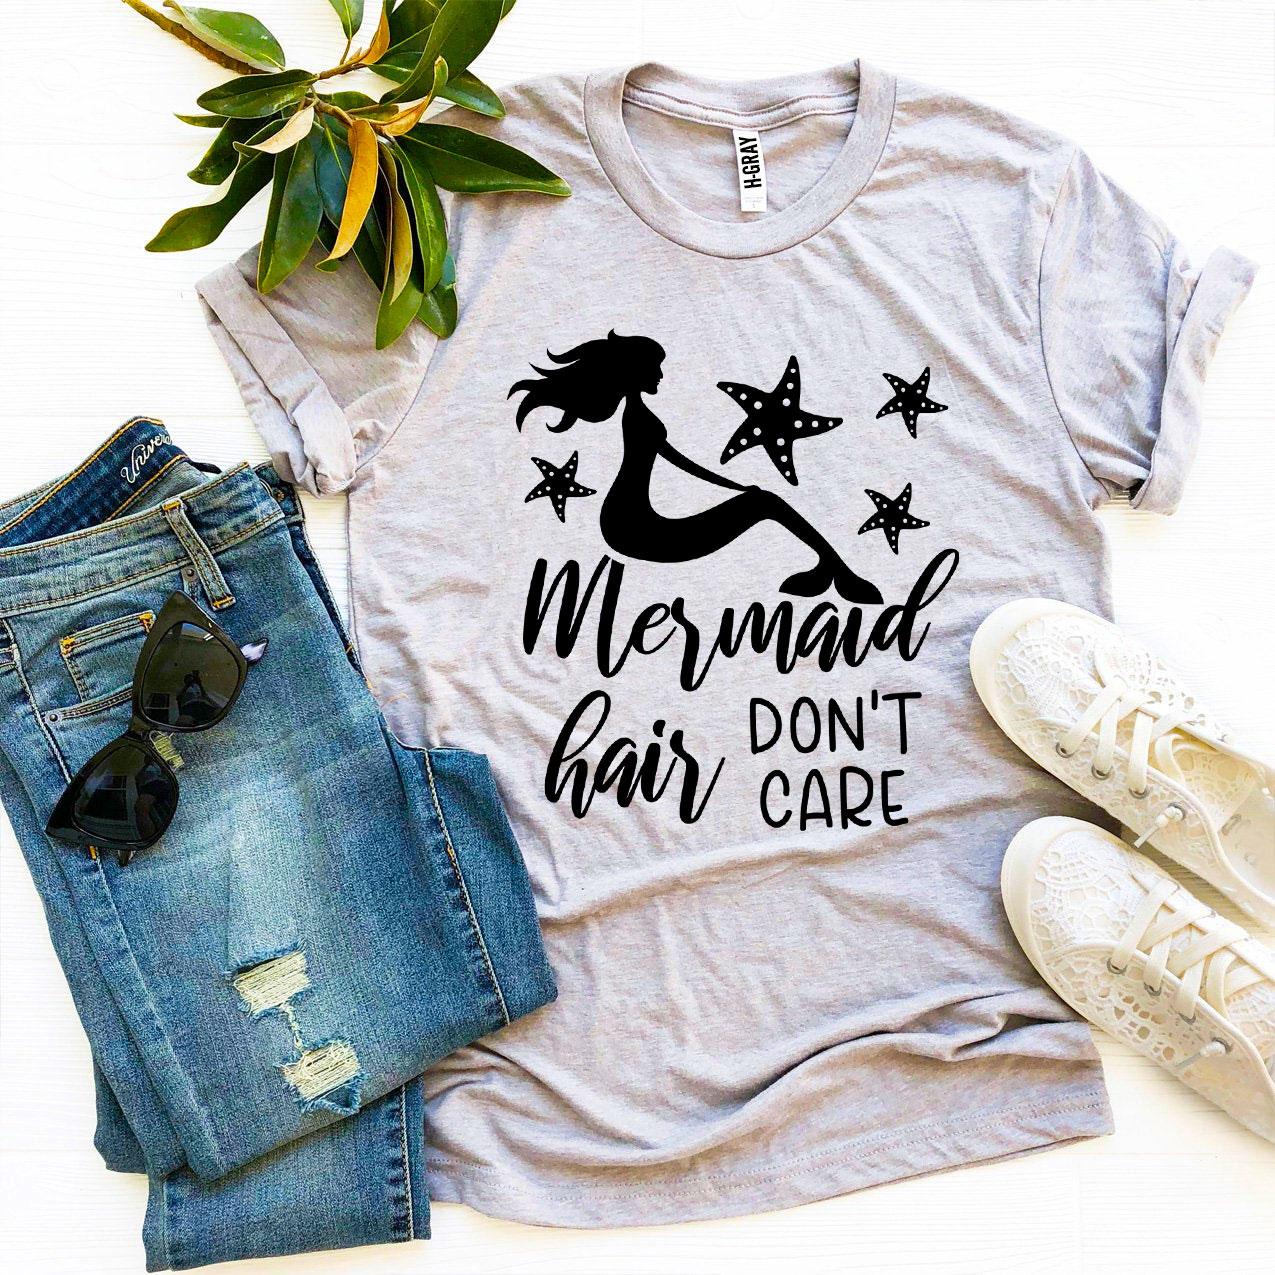 Mermaid Hair Don’t Care T-shirt